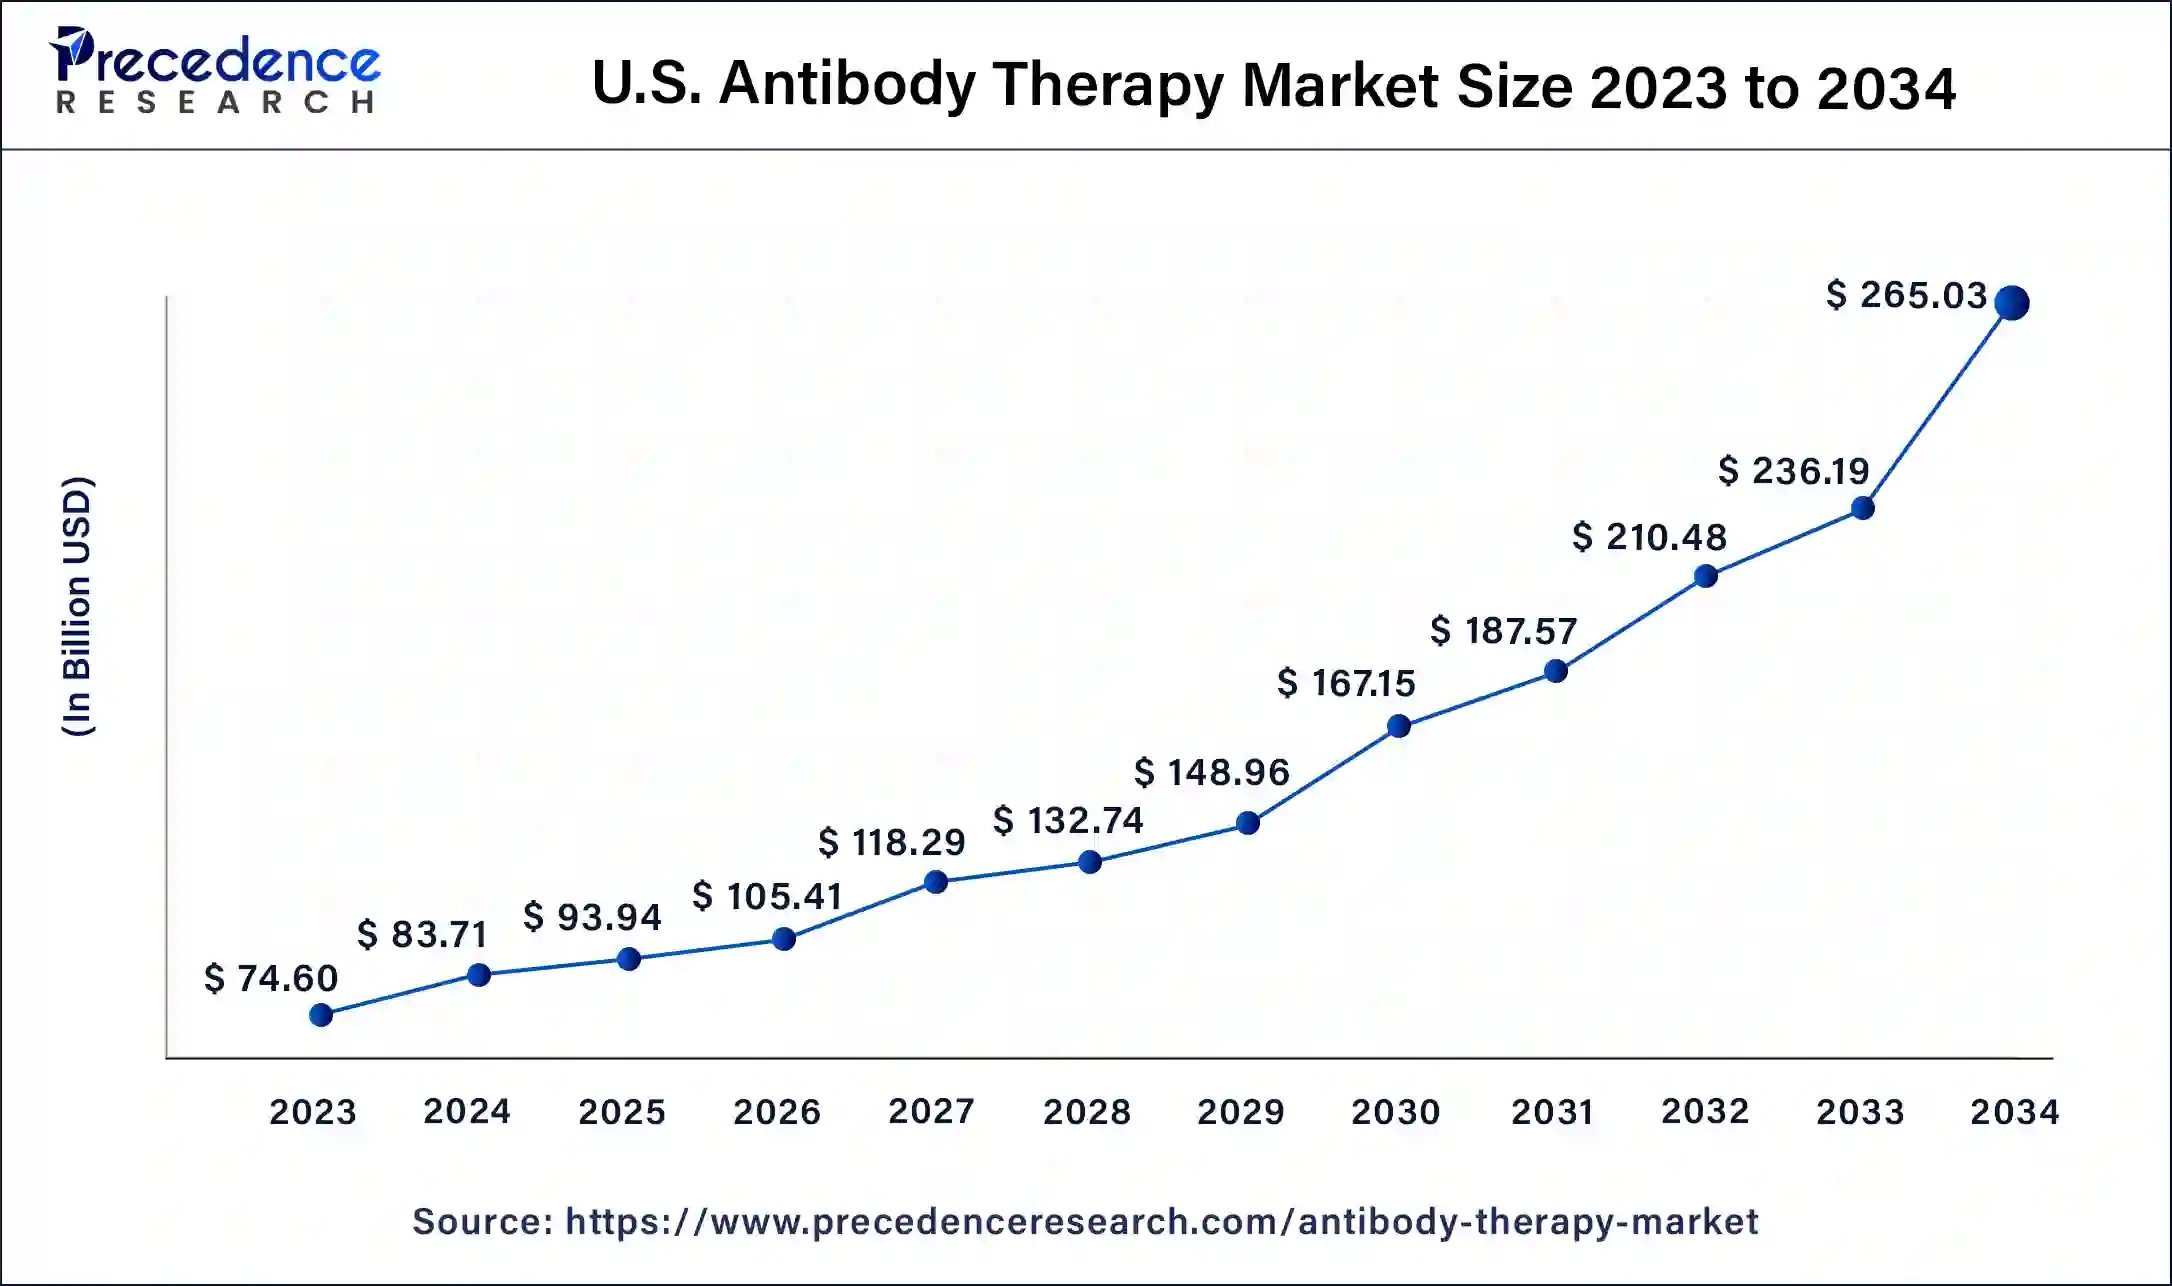 U.S. Antibody Therapy Market Size 2024 to 2034